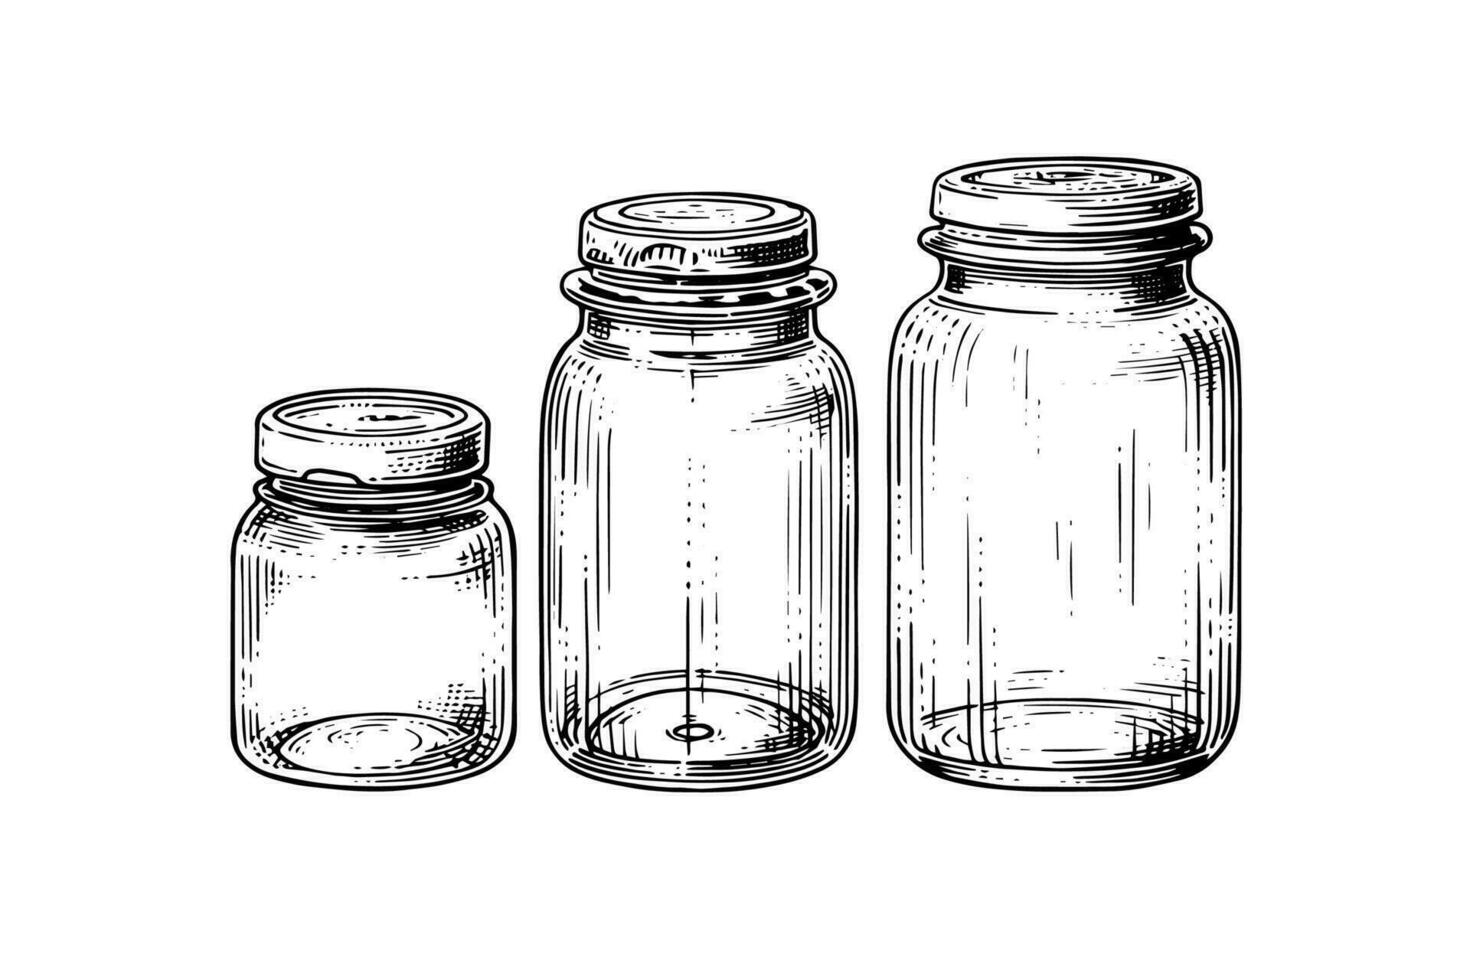 Empty glass jars ink sketch. Vector vintage black engraving illustration.